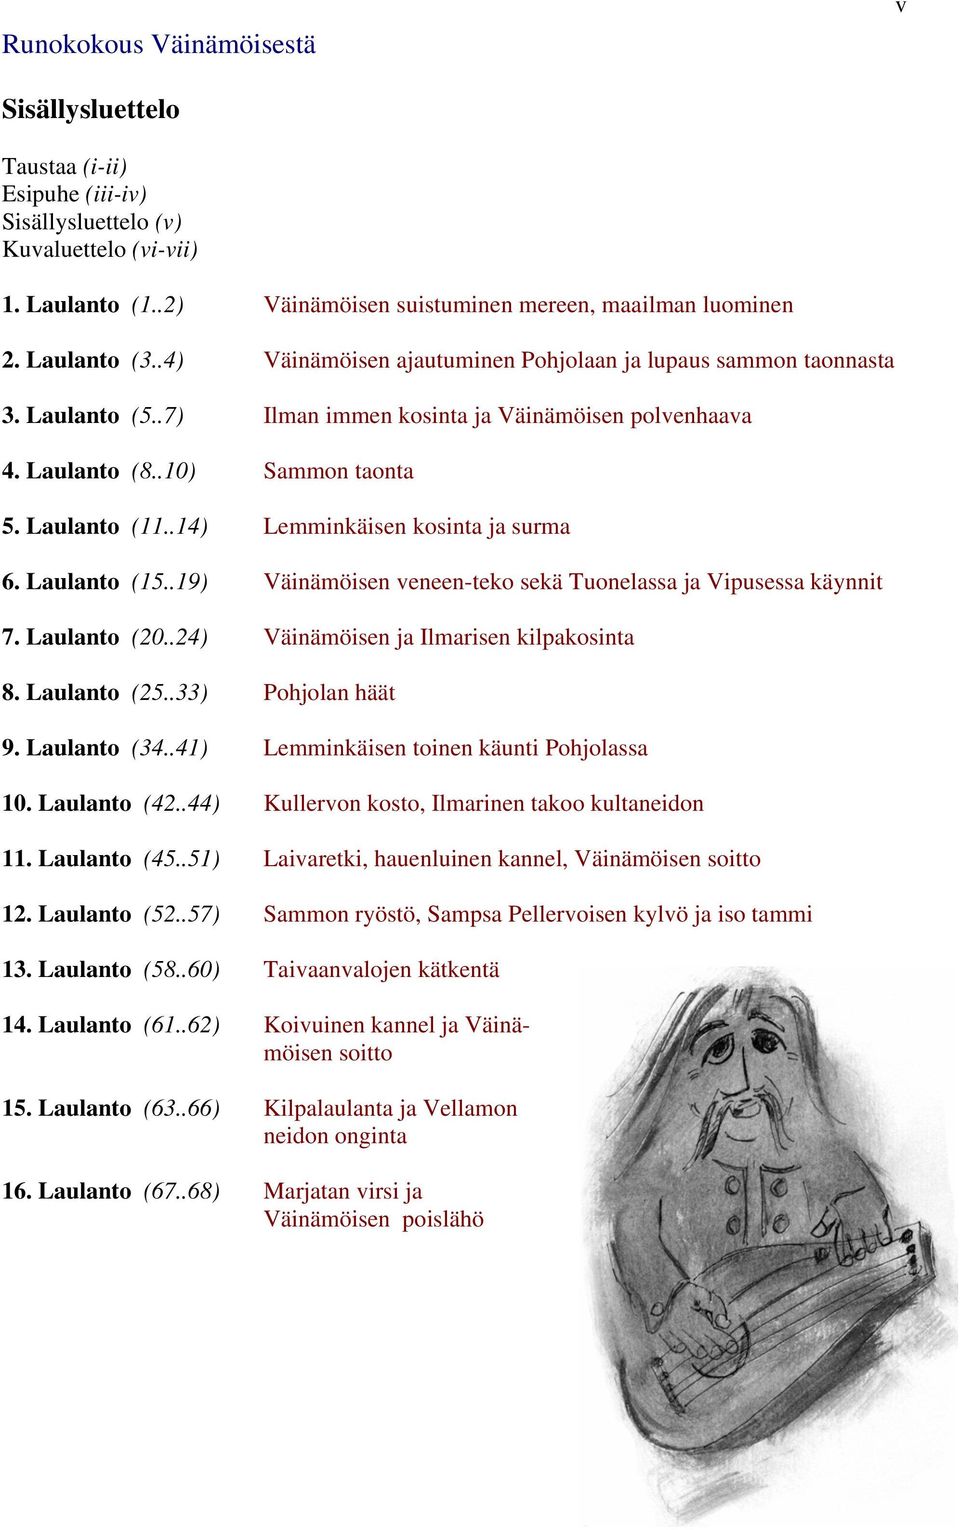 .14) Lemminkäisen kosinta ja surma 6. Laulanto (15..19) Väinämöisen veneen-teko sekä Tuonelassa ja Vipusessa käynnit 7. Laulanto (20..24) Väinämöisen ja Ilmarisen kilpakosinta 8. Laulanto (25.